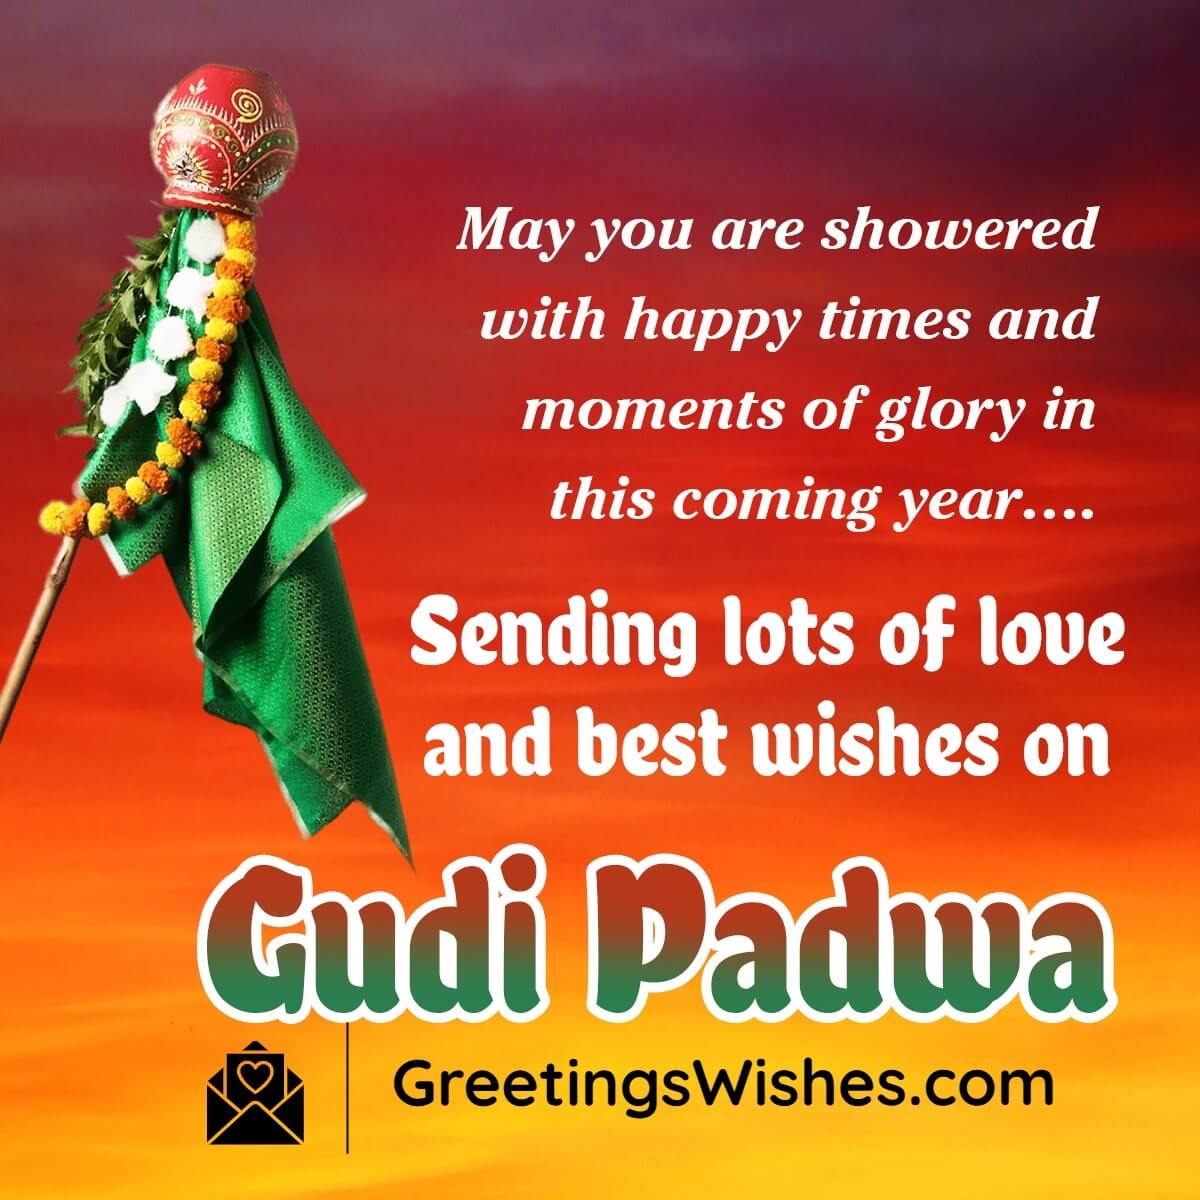 Gudi Padwa Wishes